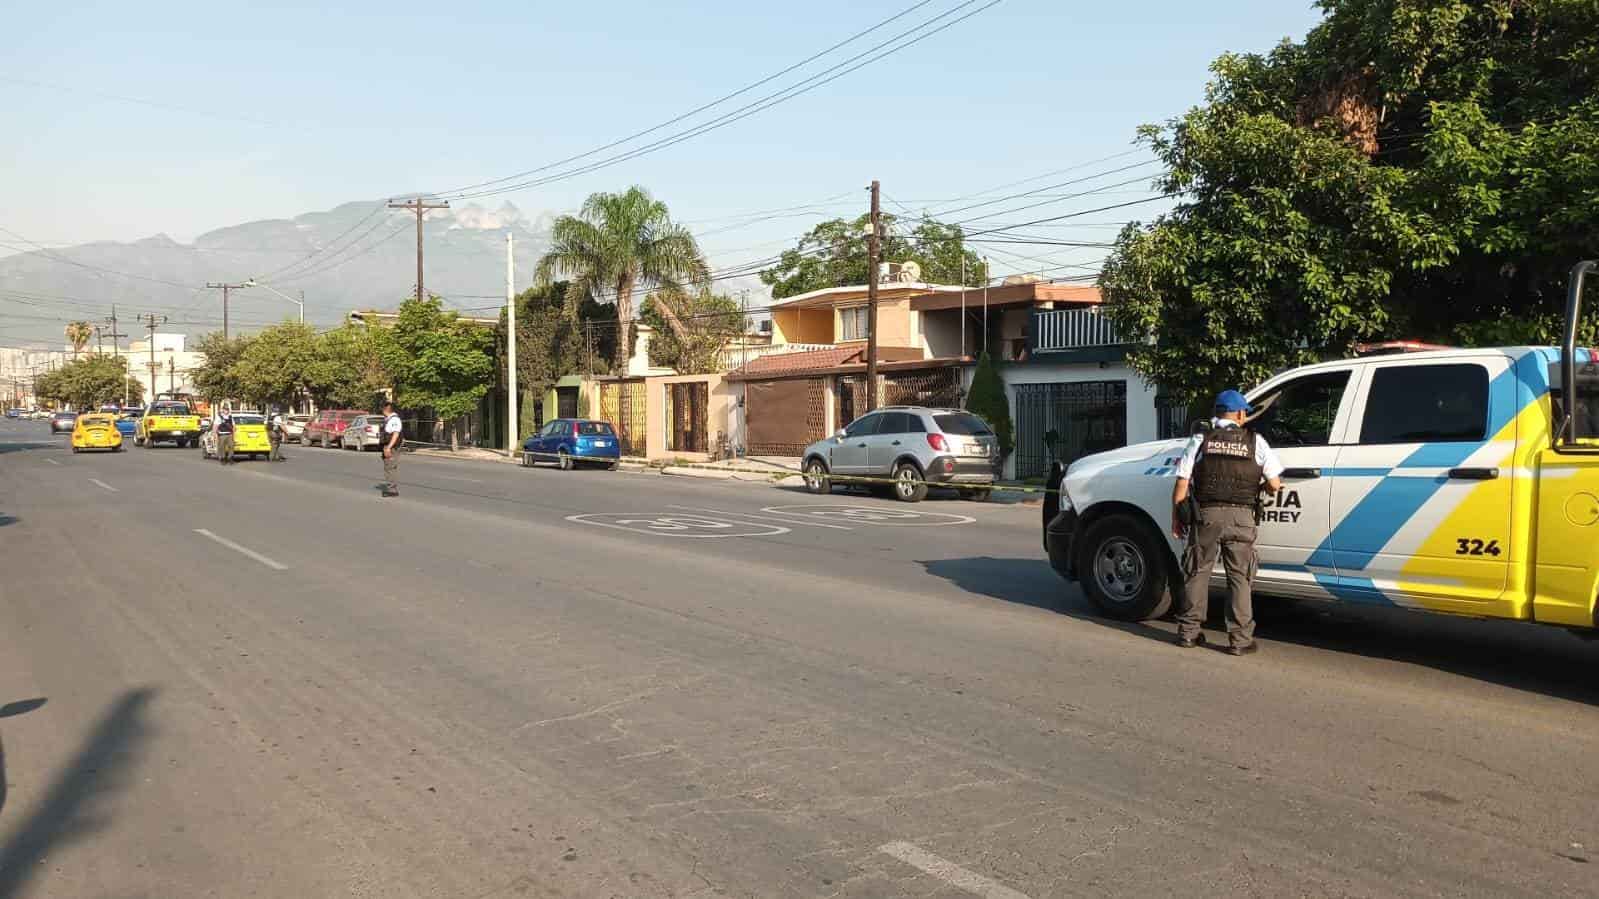 Detonaciones de arma de fuego en calles del Fraccionamiento Bernardo Reyes, causaron alarma entre vecinos de sector y llevaron a la movilización de elementos de la policía ayer, sin que se reportaran lesionados o daños.